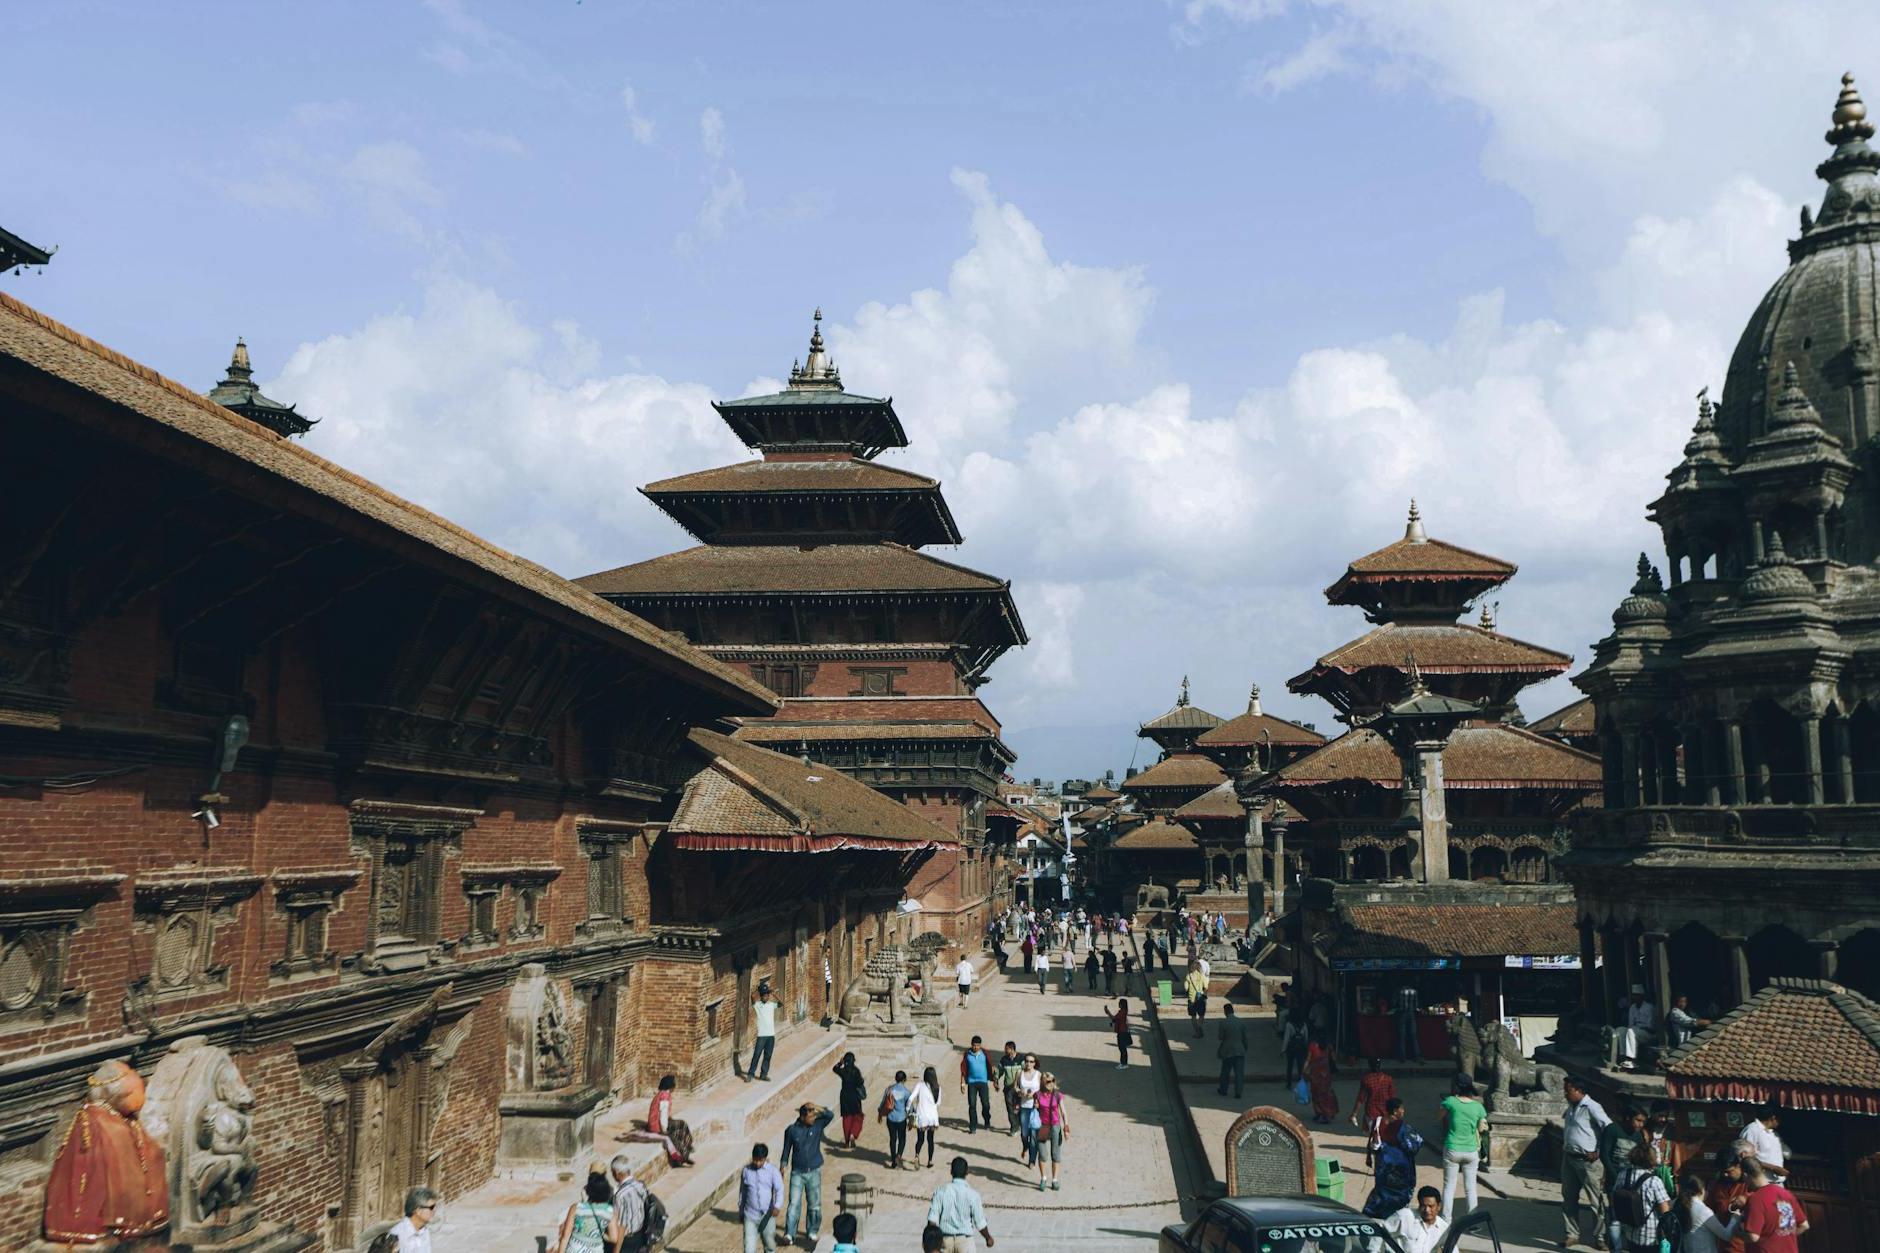 Buildings in Patan Durbar Square in Lalitpur, Nepal